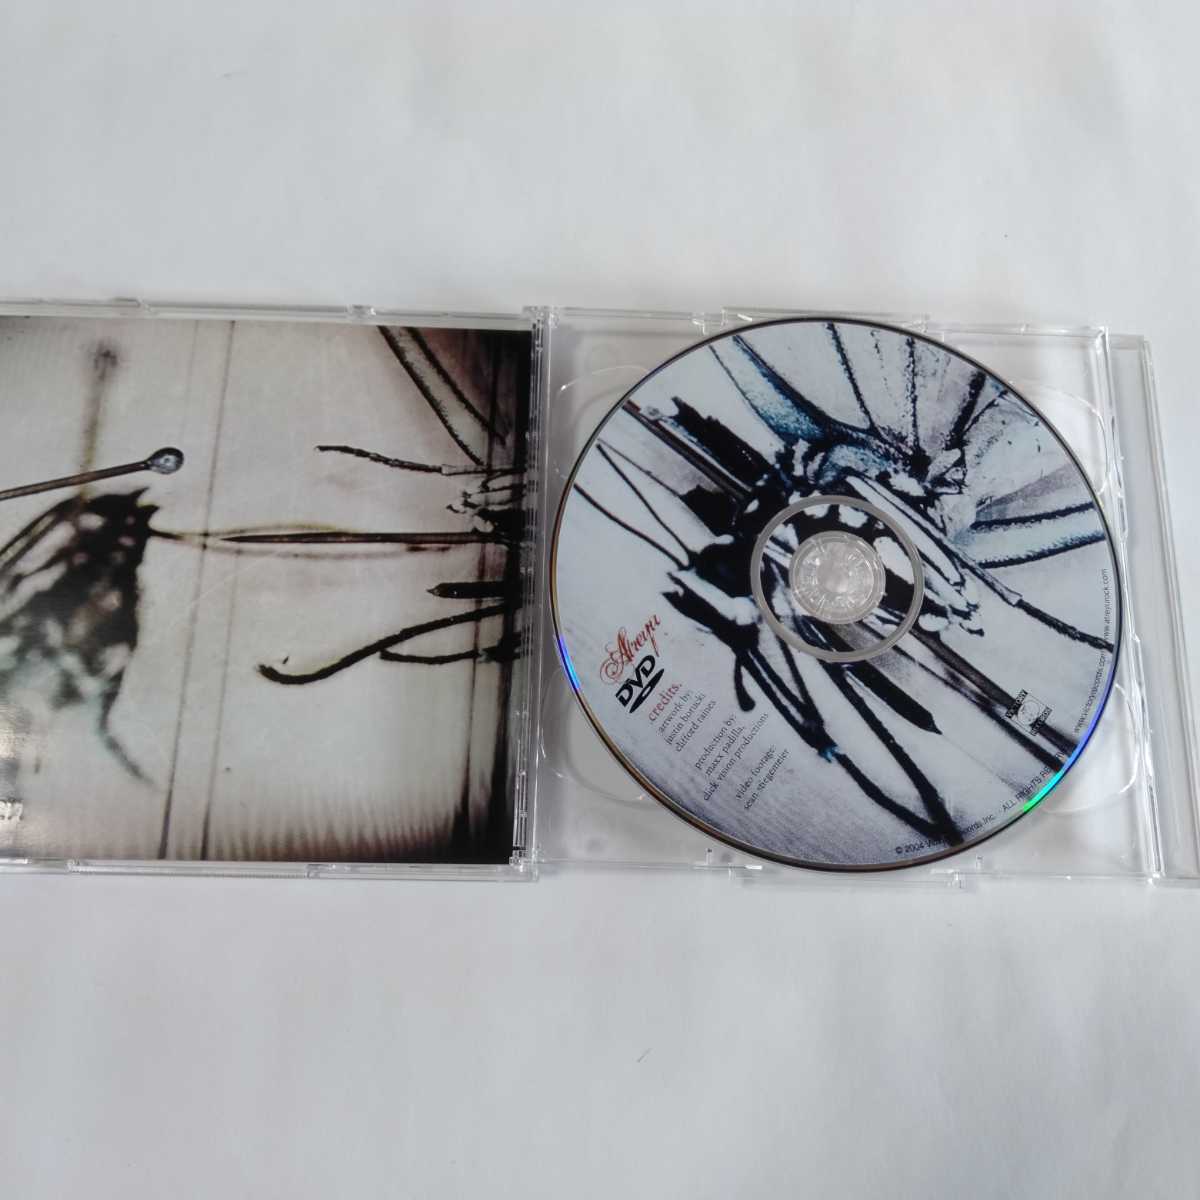 送料無料】Atreyu限定版アルバム2枚セット suicide notes and butterfly kisses/the curse CD+DVD limited edition アトレイユ メタルコア